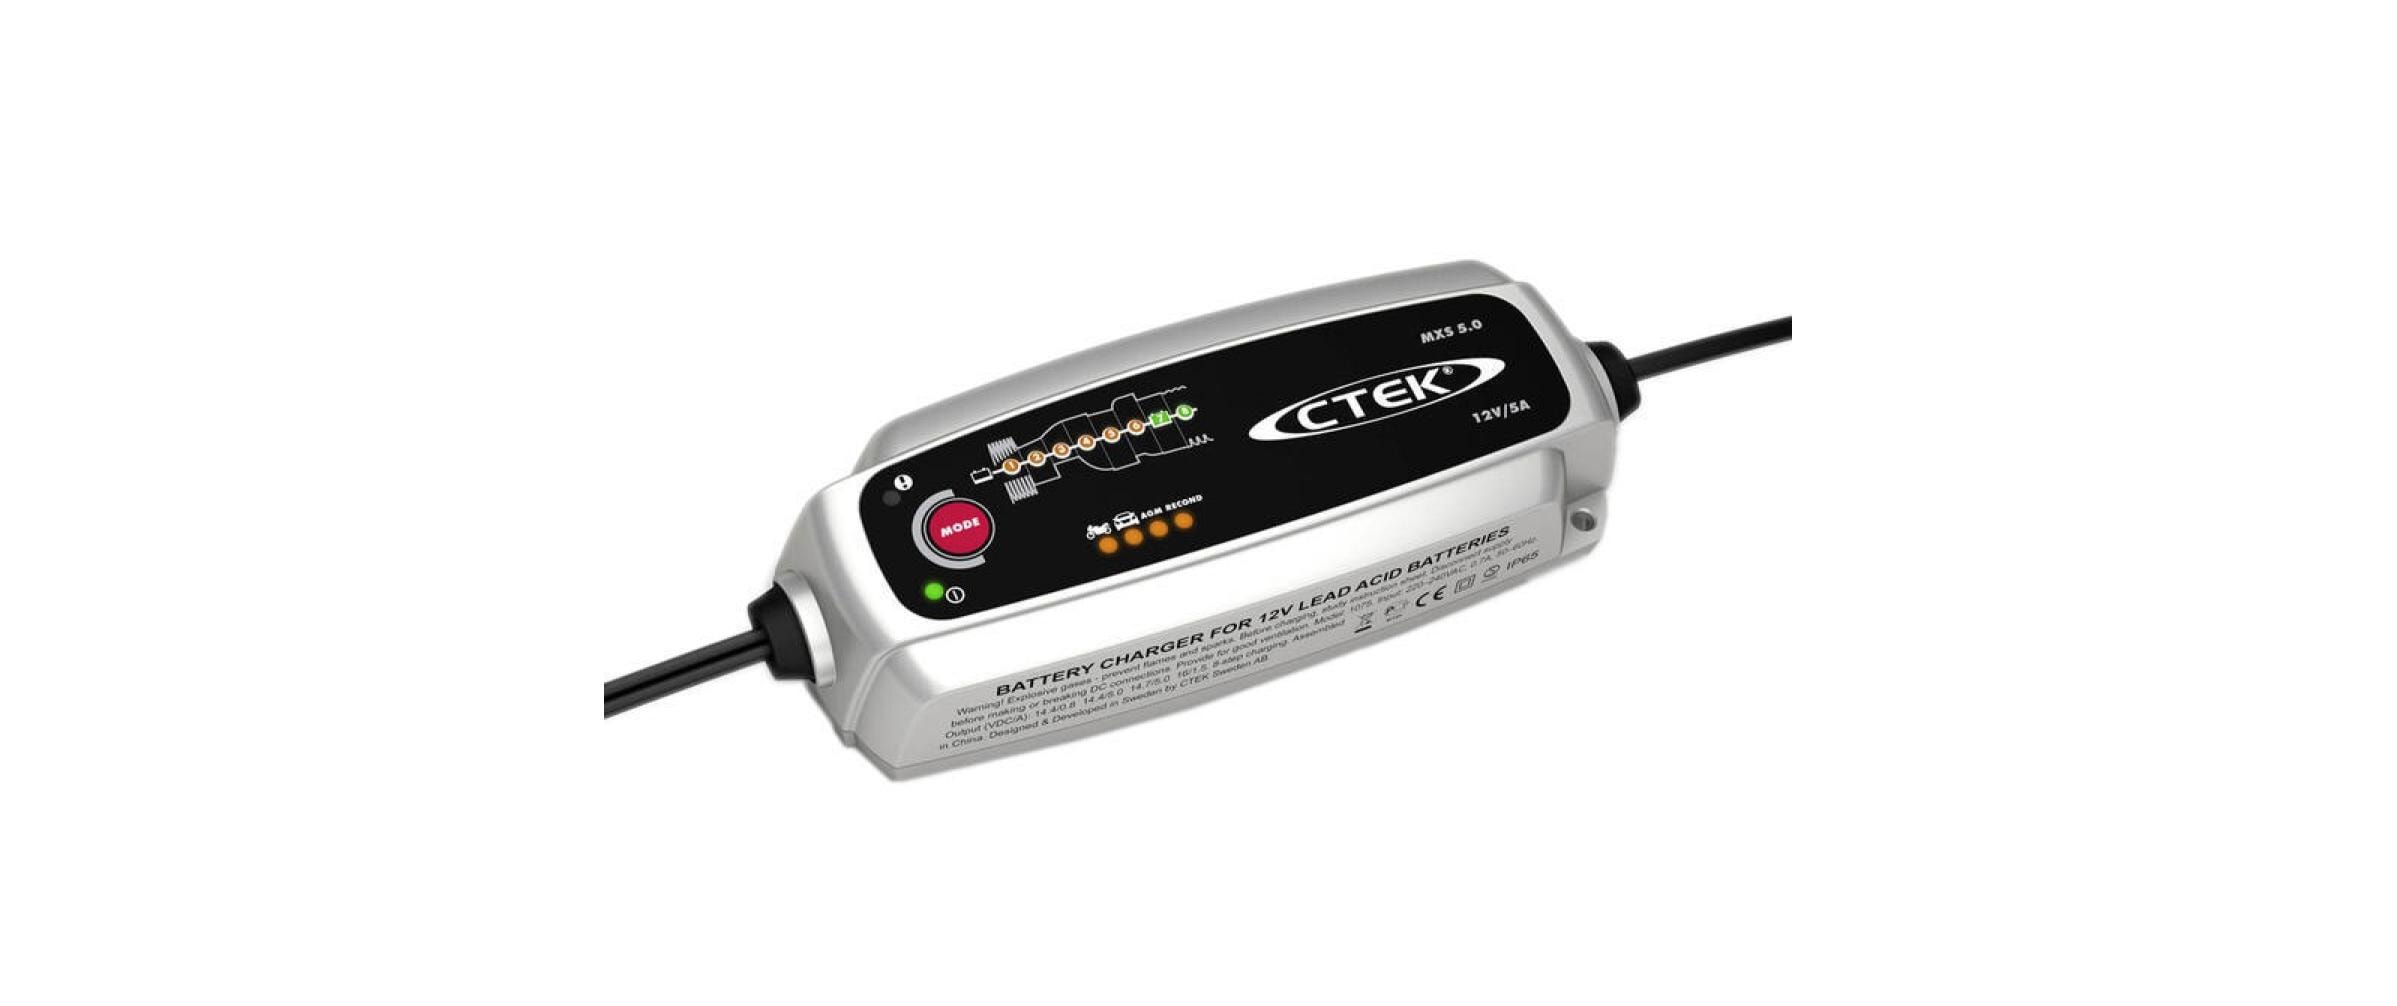 Autobatterie-Ladegerät »MXS 5.0«